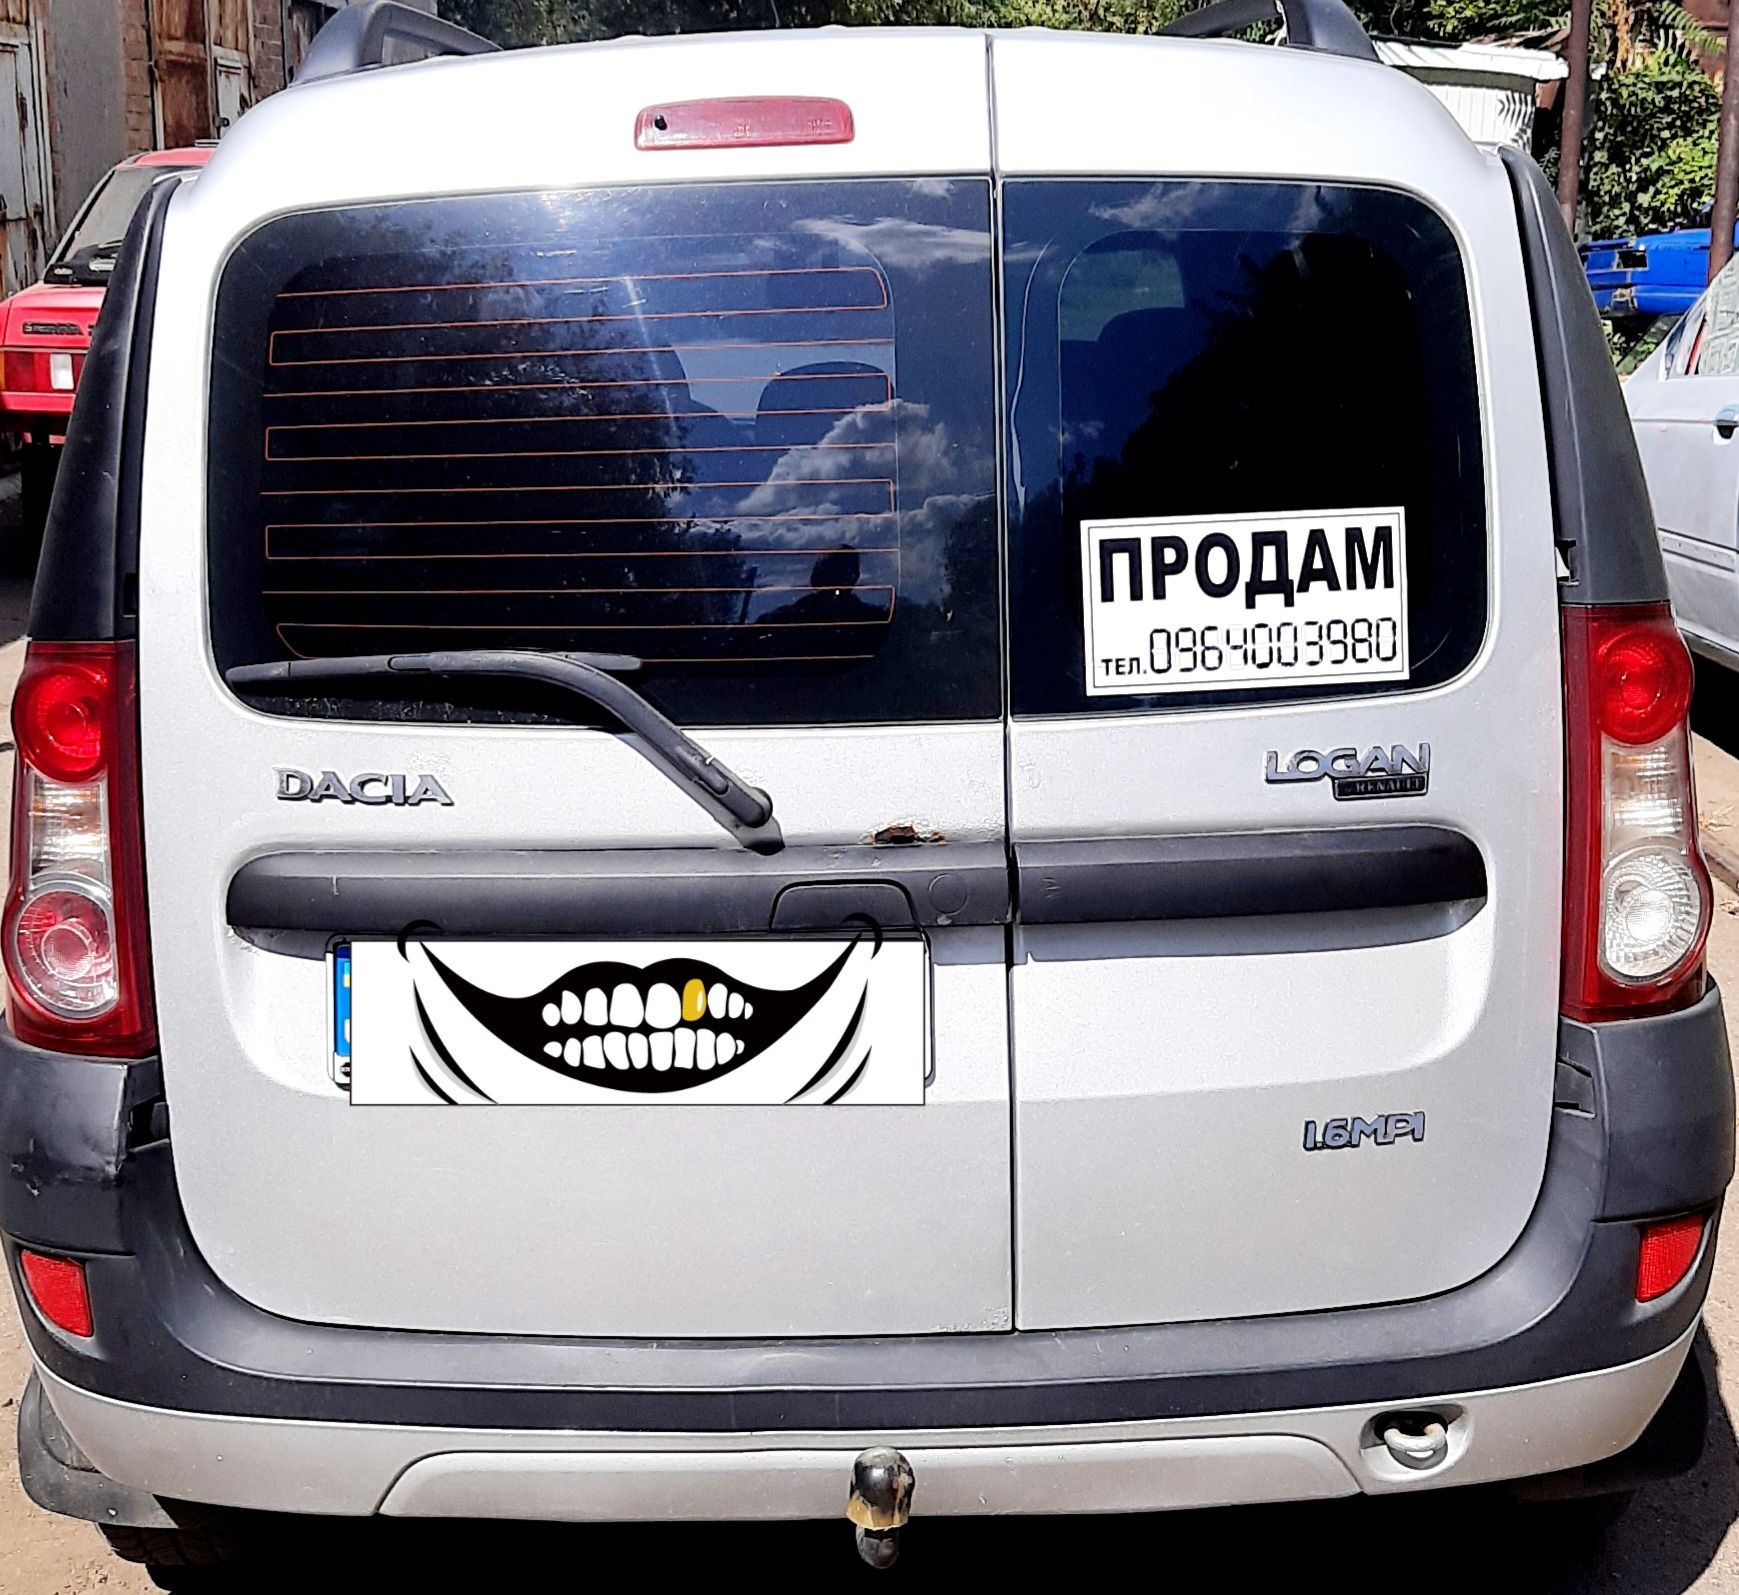 Продам Dacia Logan газ вписан